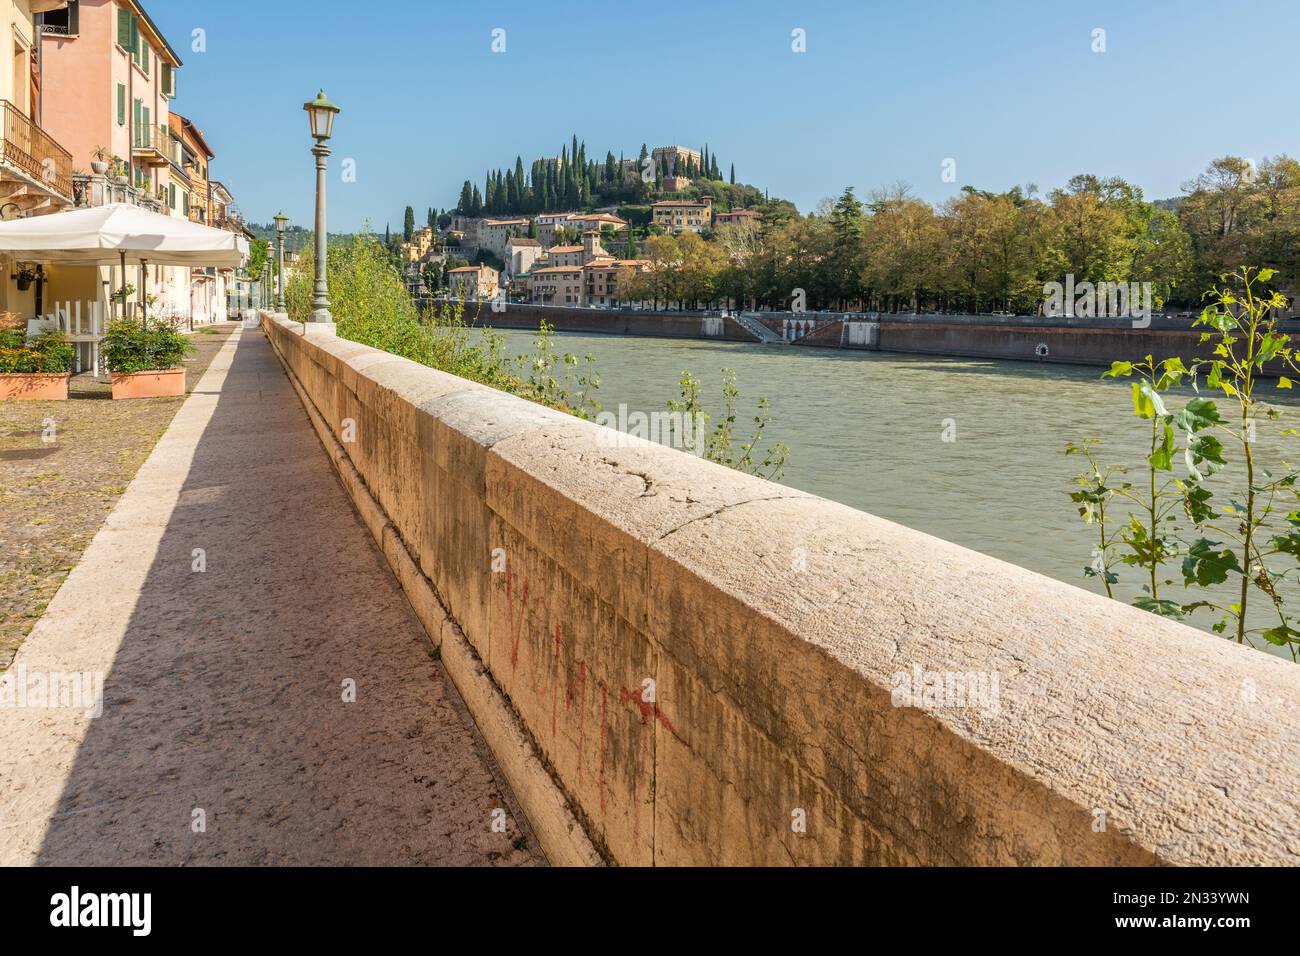 Vista de Castel San Pietro desde el paseo marítimo a lo largo del río Adige - Verona, región de Veneto en el norte de Italia Foto de stock